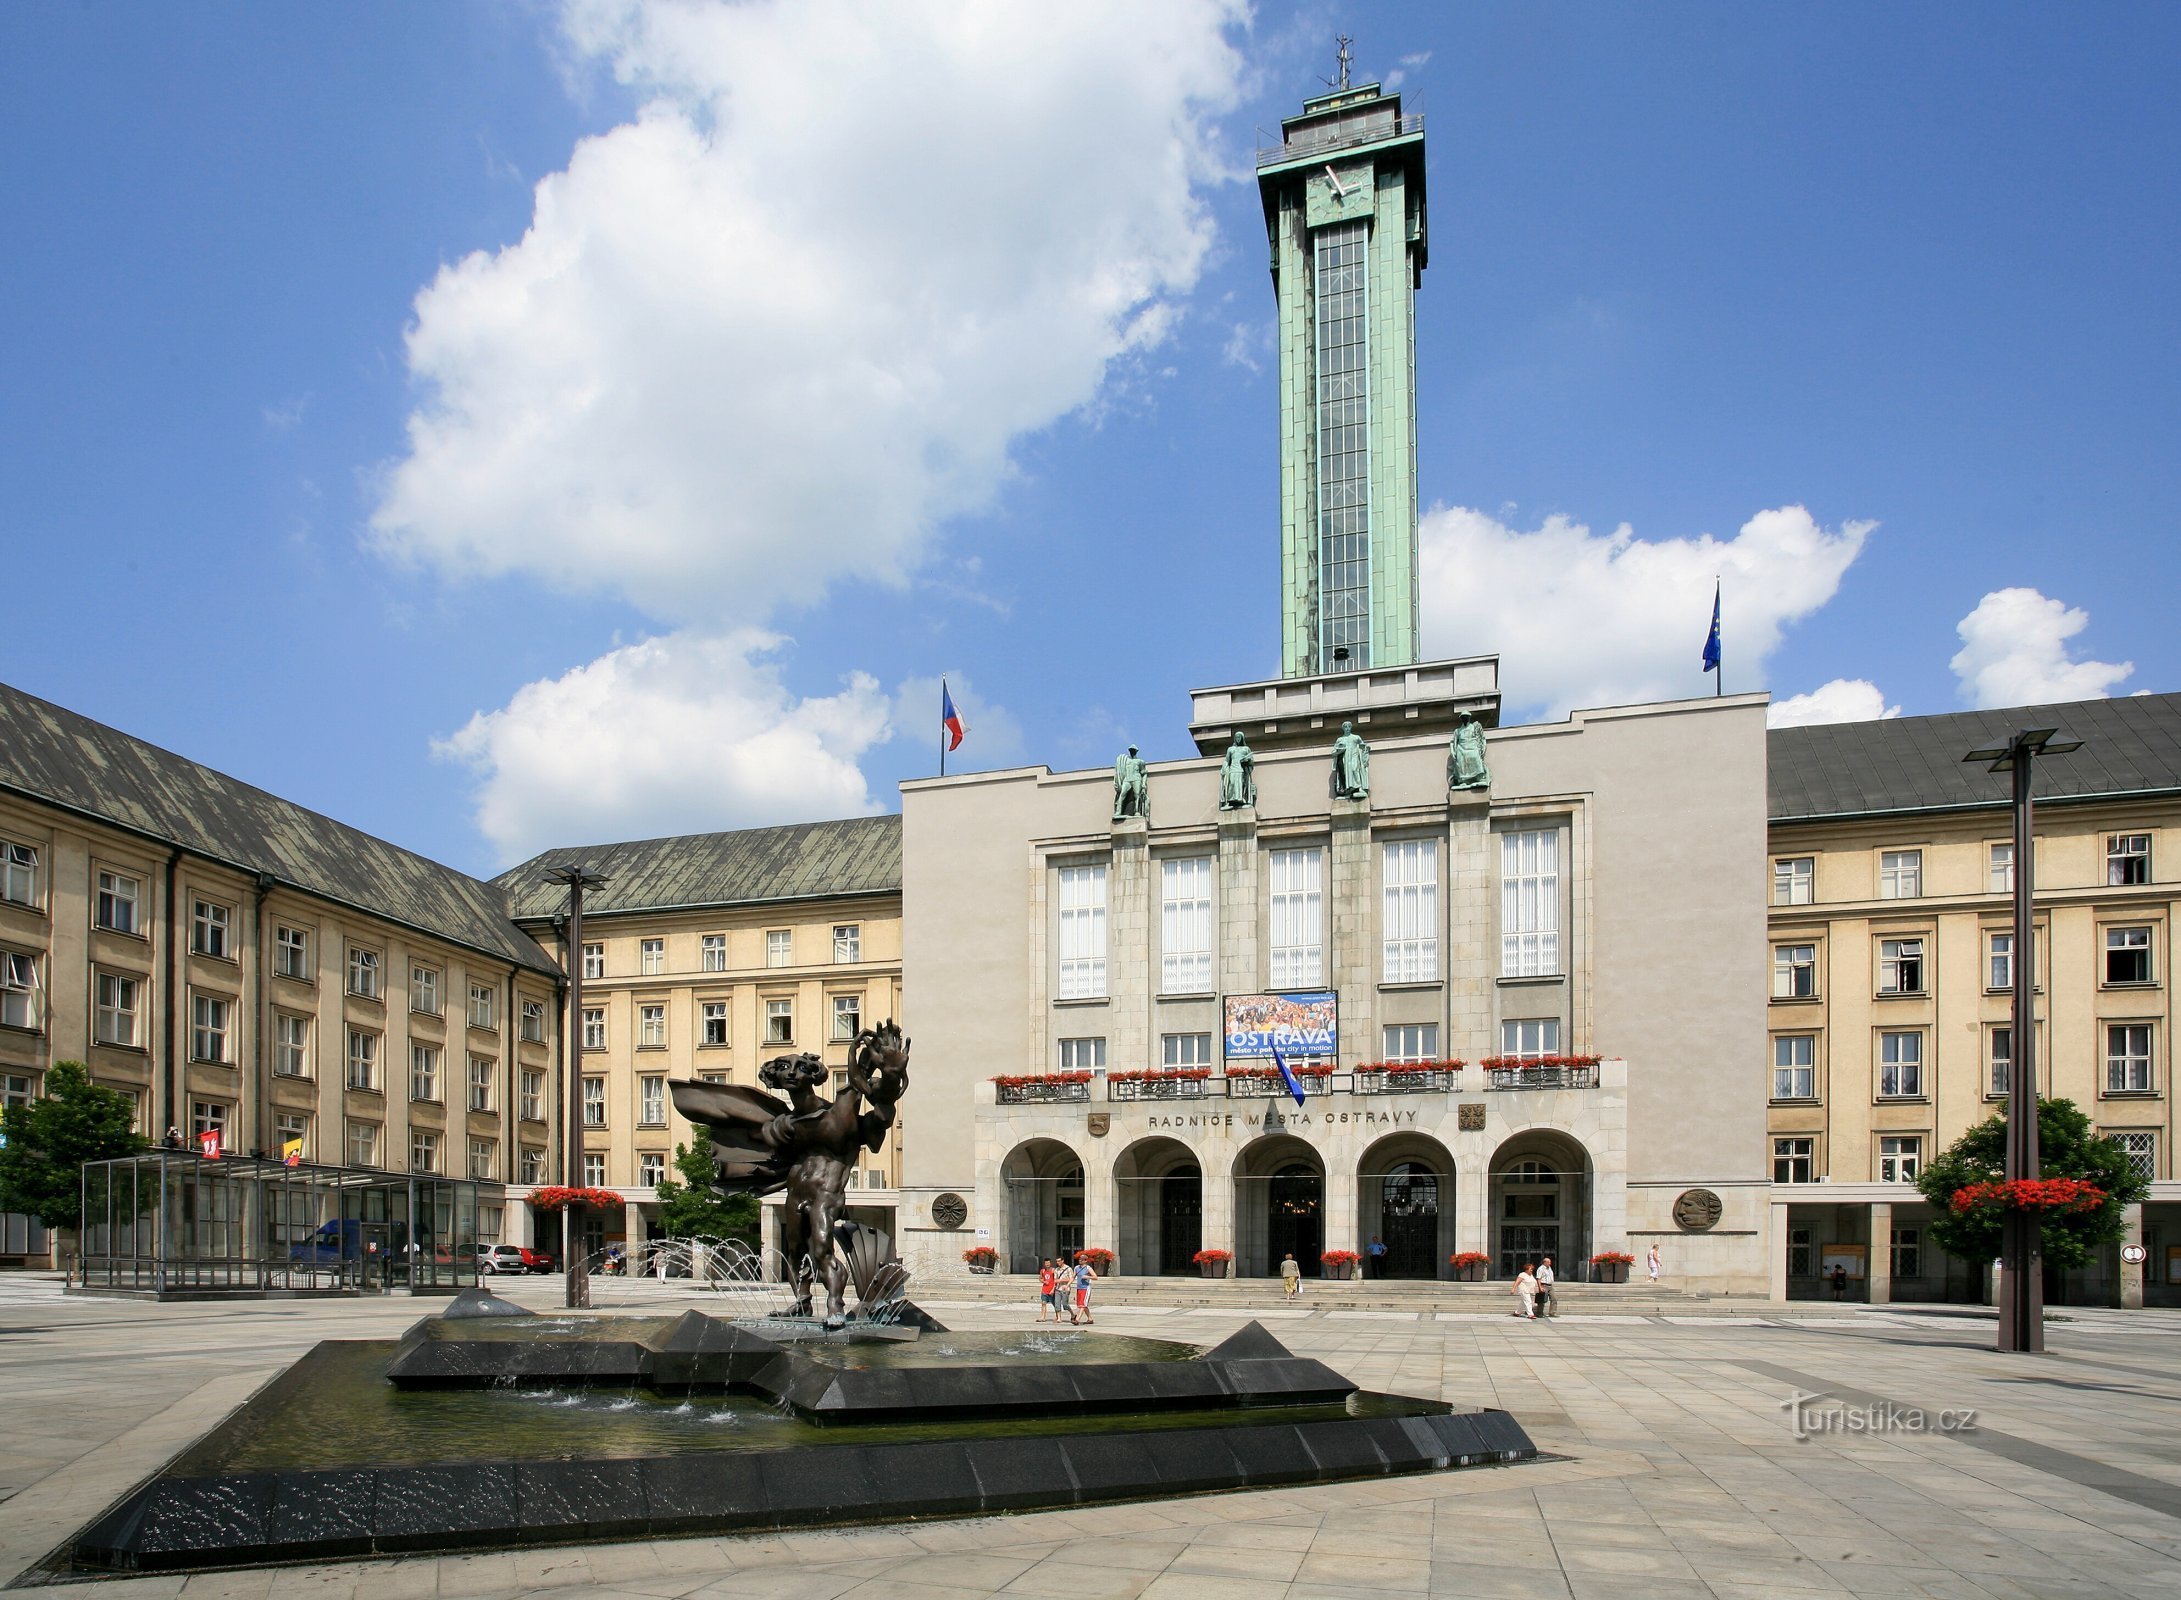 Tour d'observation du nouvel hôtel de ville d'Ostrava